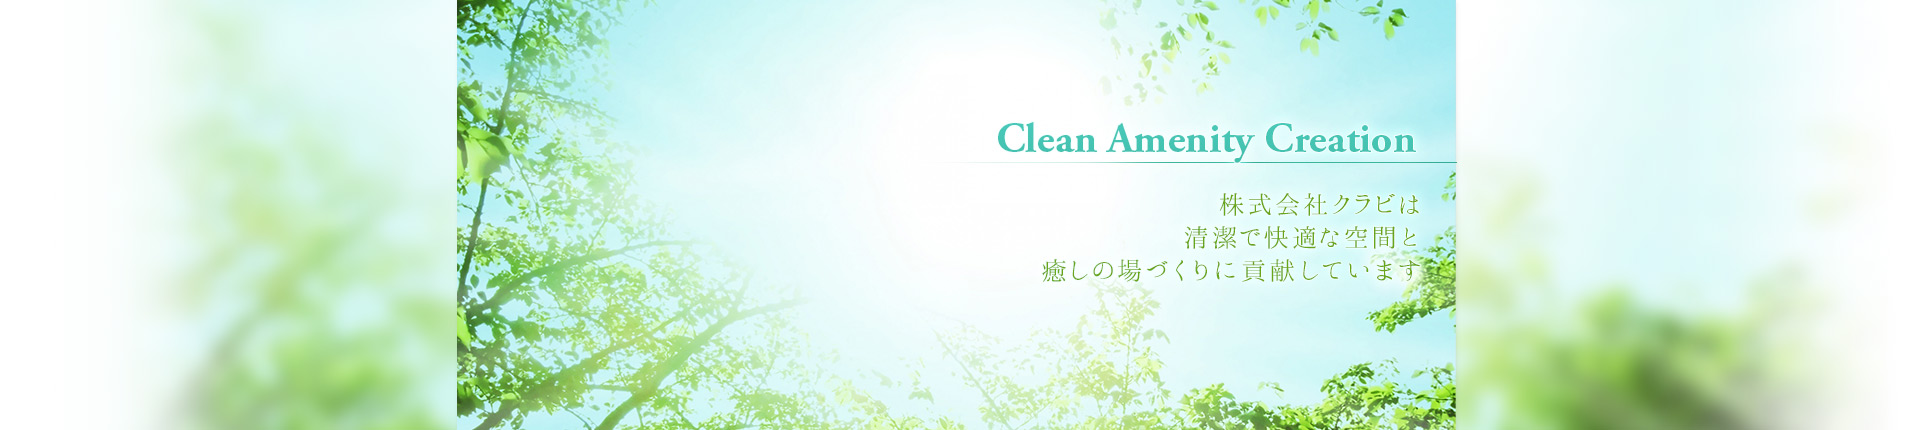 
株式会社クラビは、清潔で快適な空間と癒しの場づくりに貢献しています。